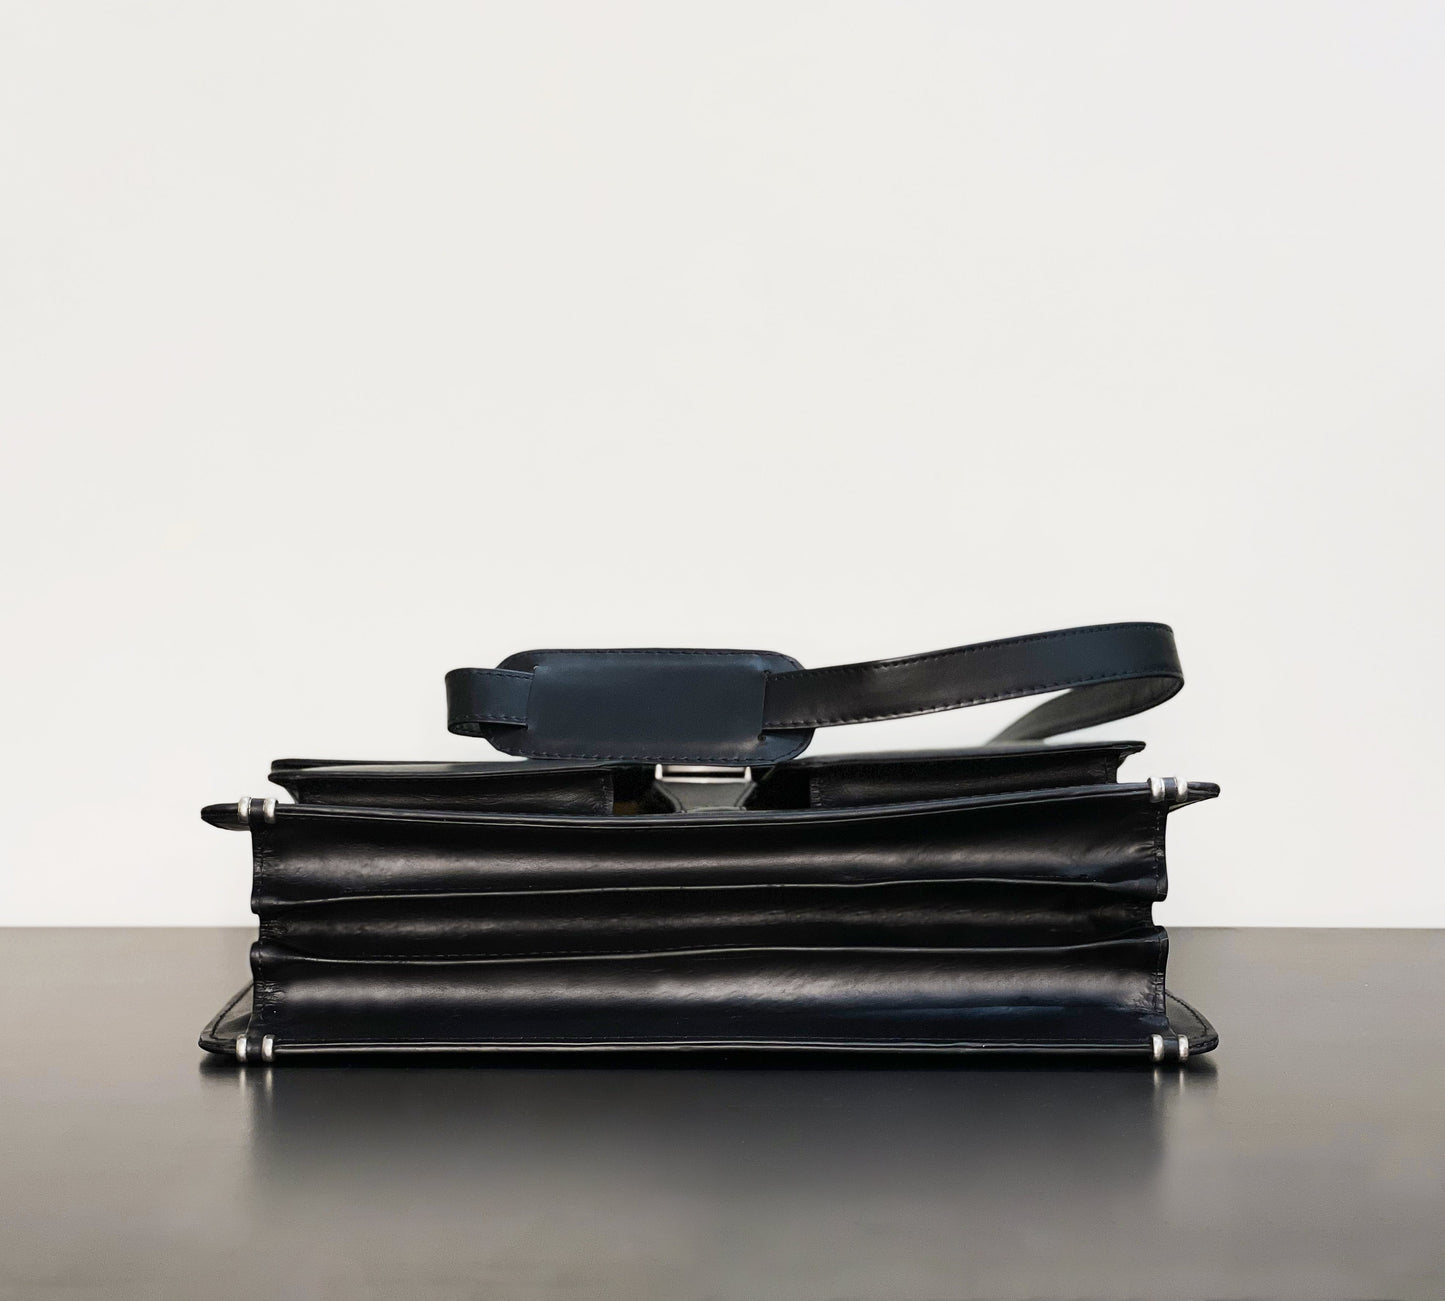 Black Business Cross-Shoulder Laptop Bag